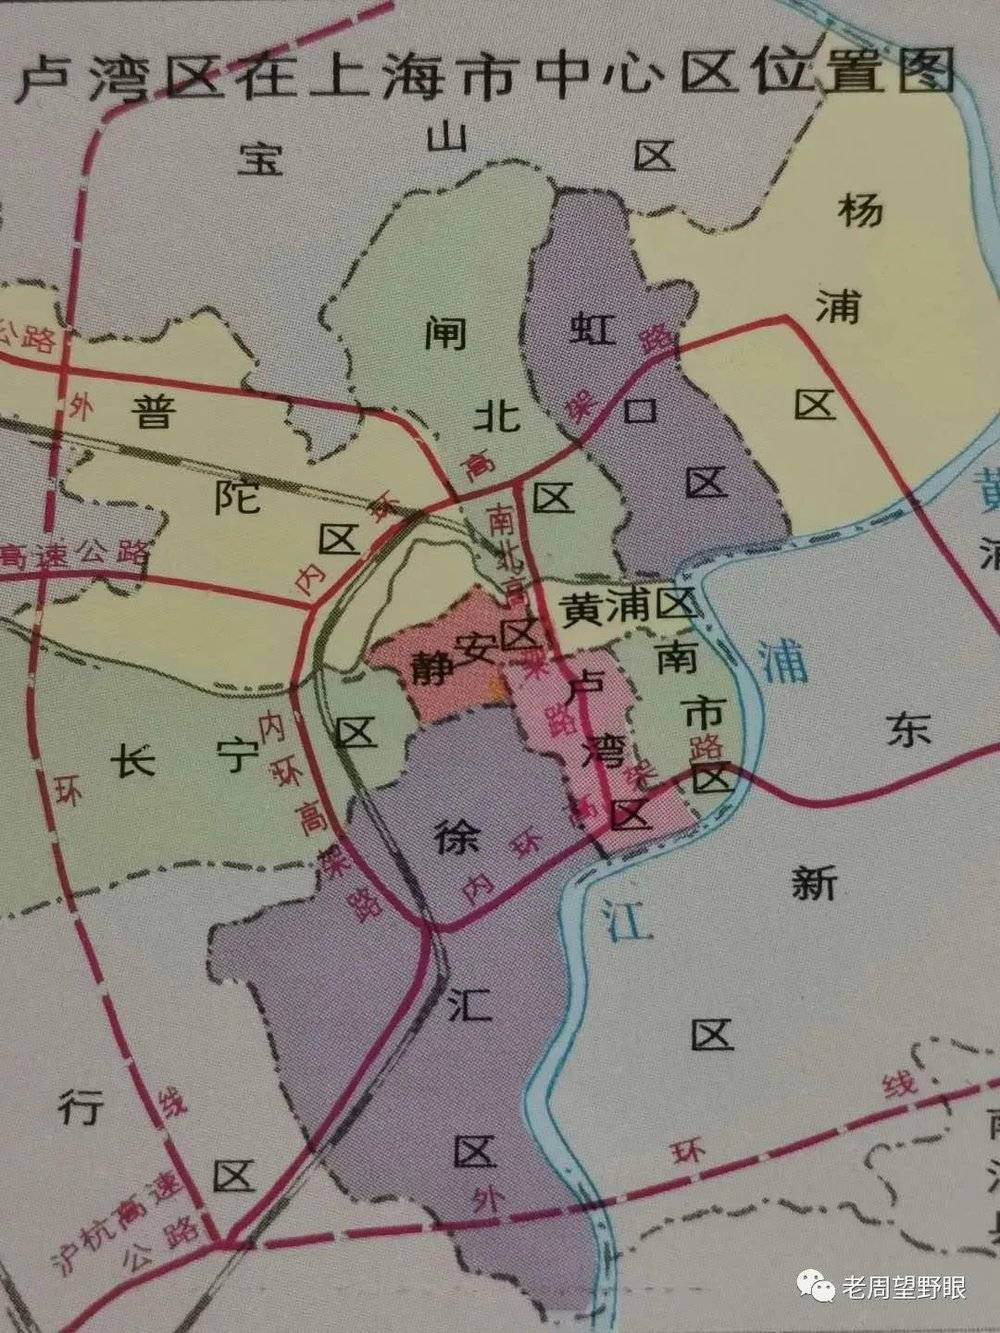 1998年《卢湾区志》中的卢湾位置图/周力 提供